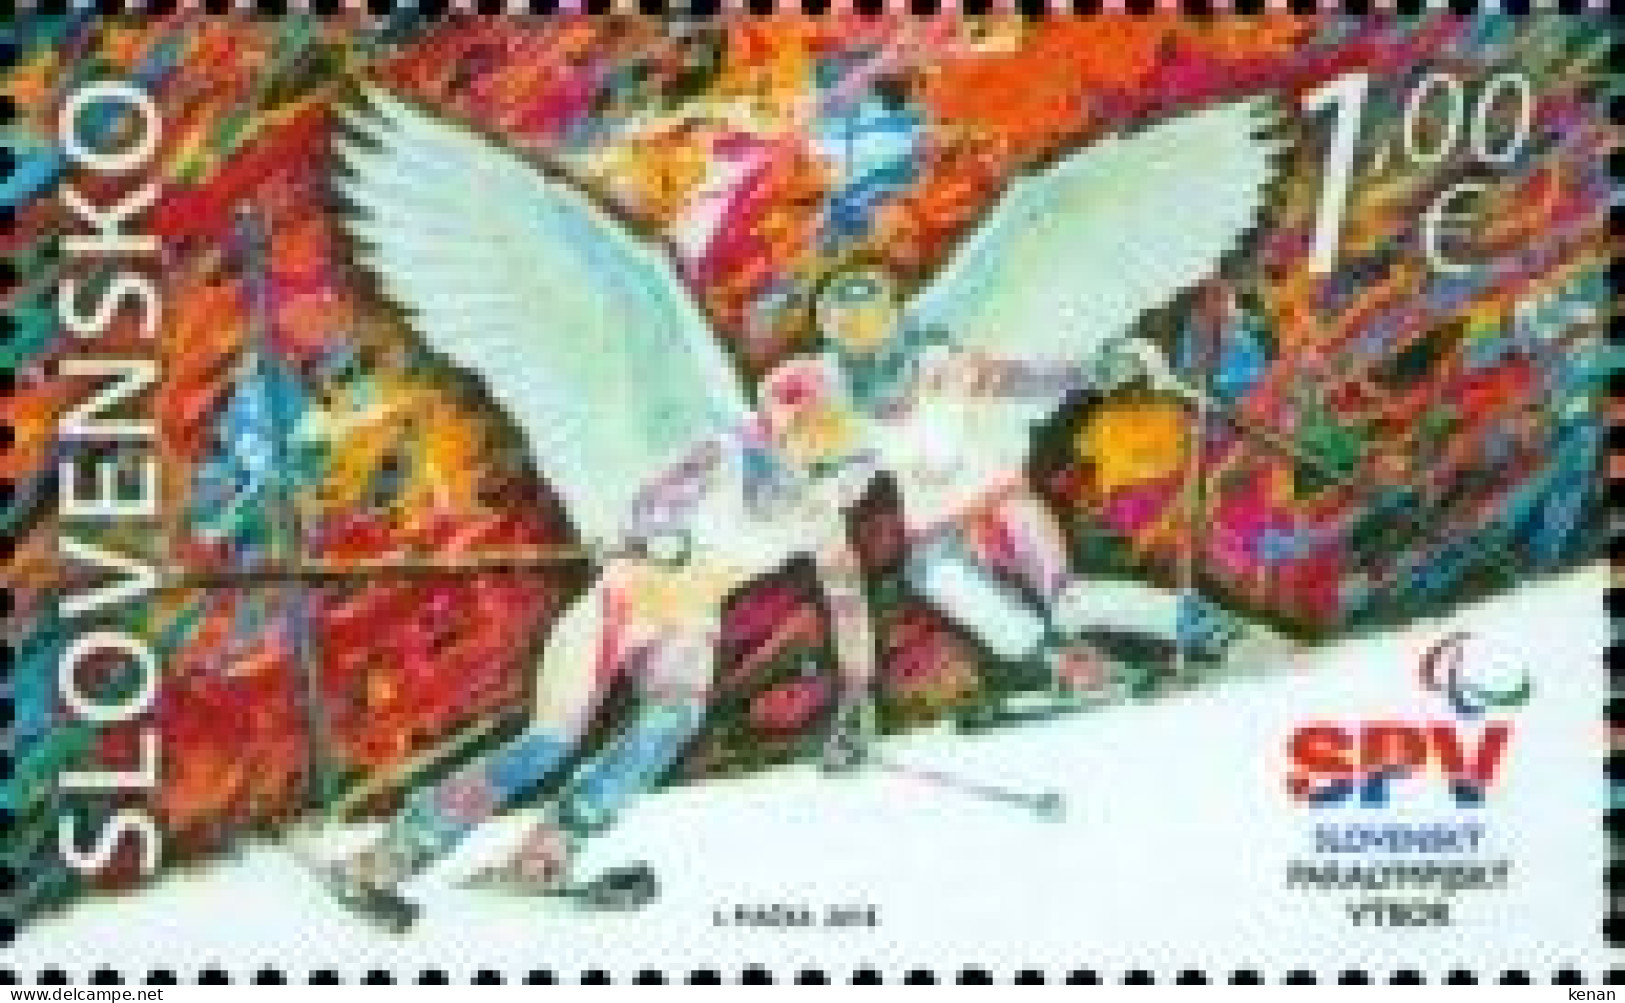 Slovakia, 2018 , Mi: 838 (MNH) - Unused Stamps